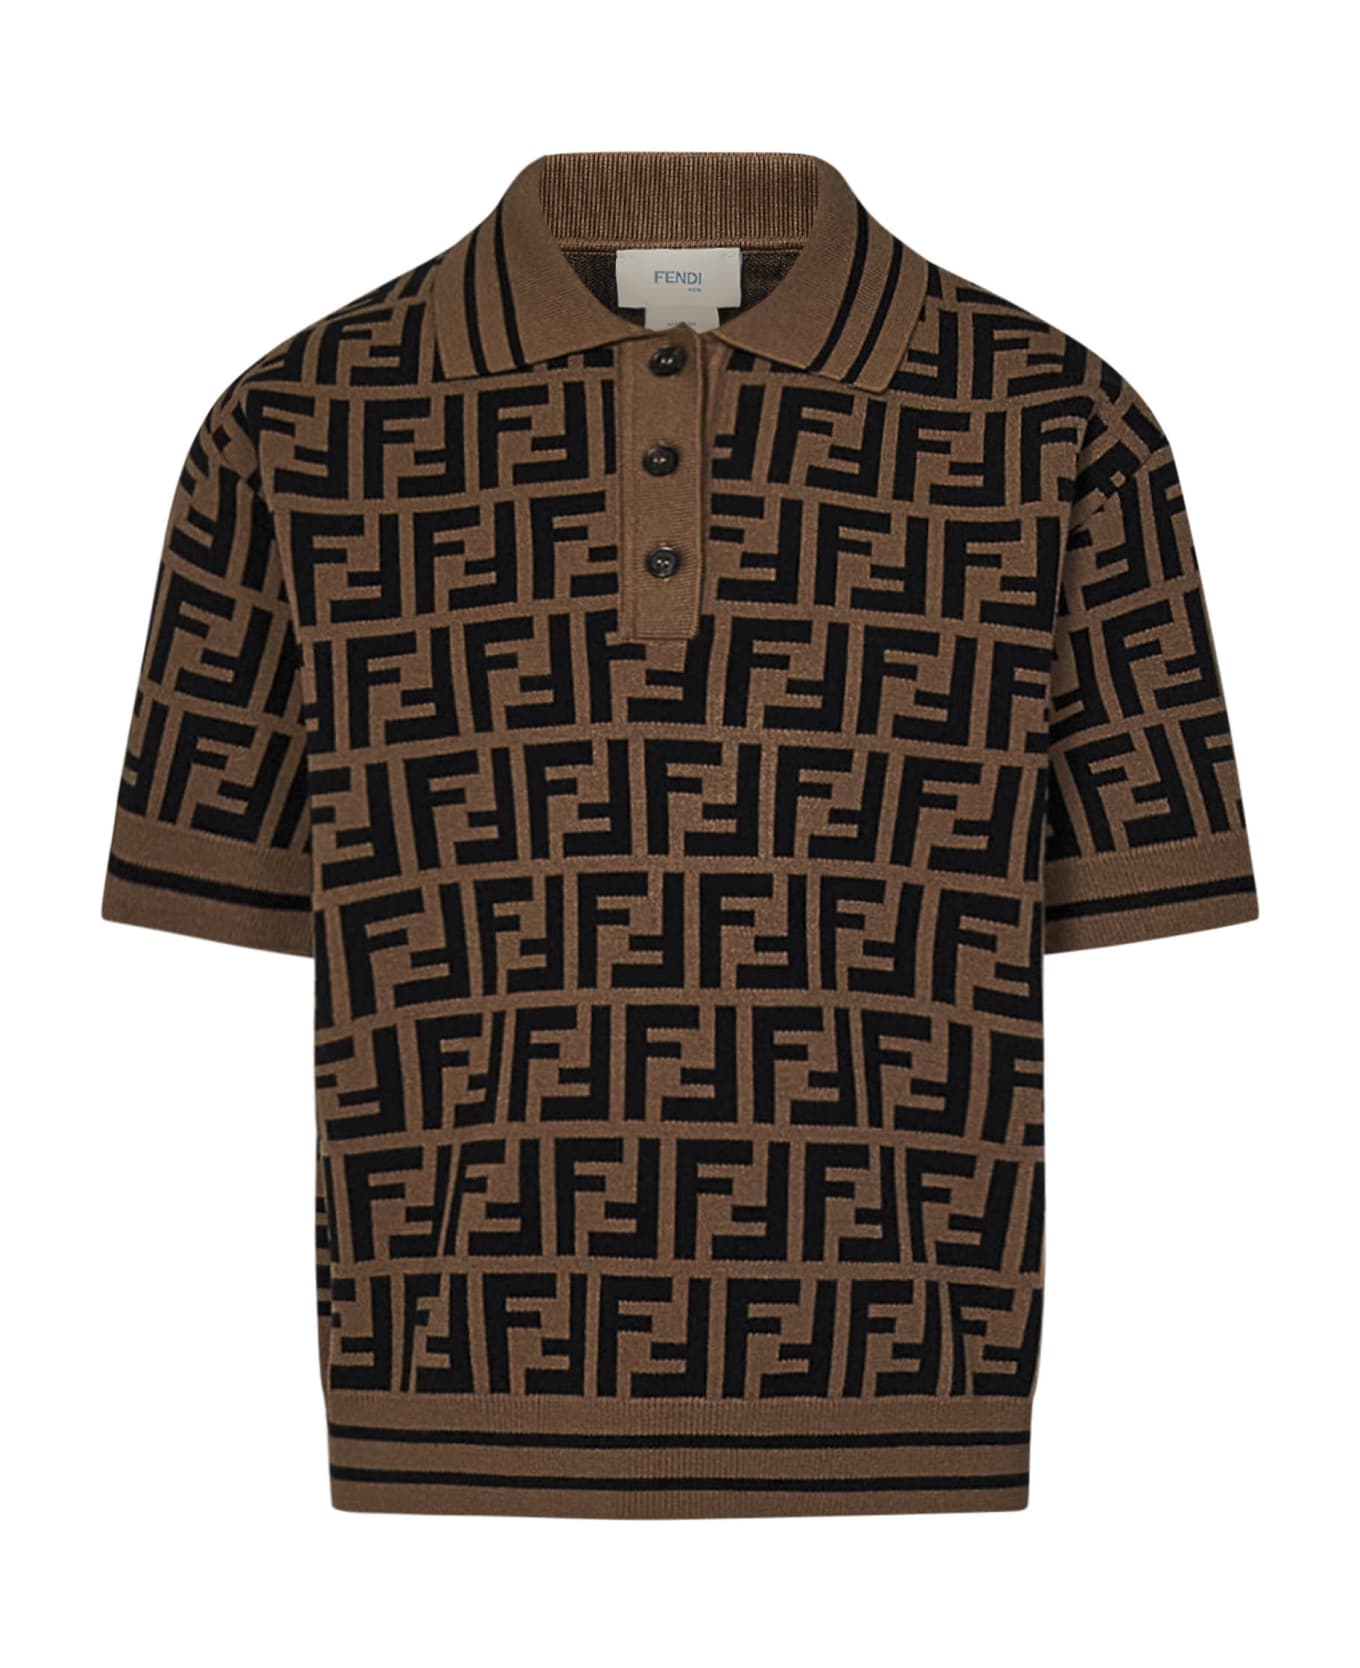 Fendi Kids Polo Shirt - Brown